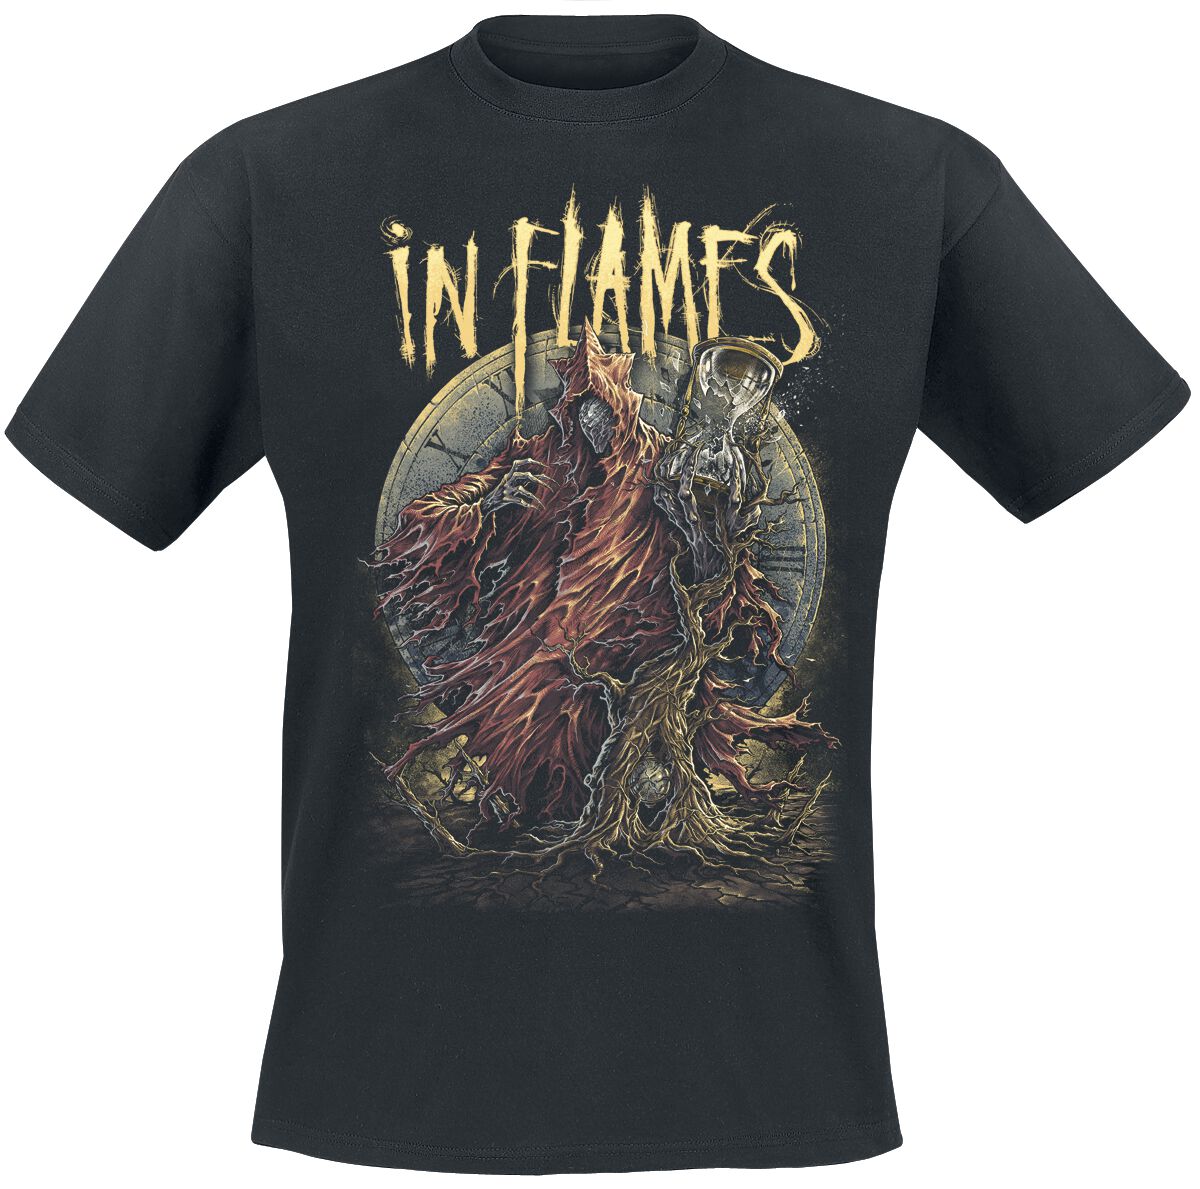 In Flames T-Shirt - End Of Time - S bis 3XL - für Männer - Größe 3XL - schwarz  - Lizenziertes Merchandise!